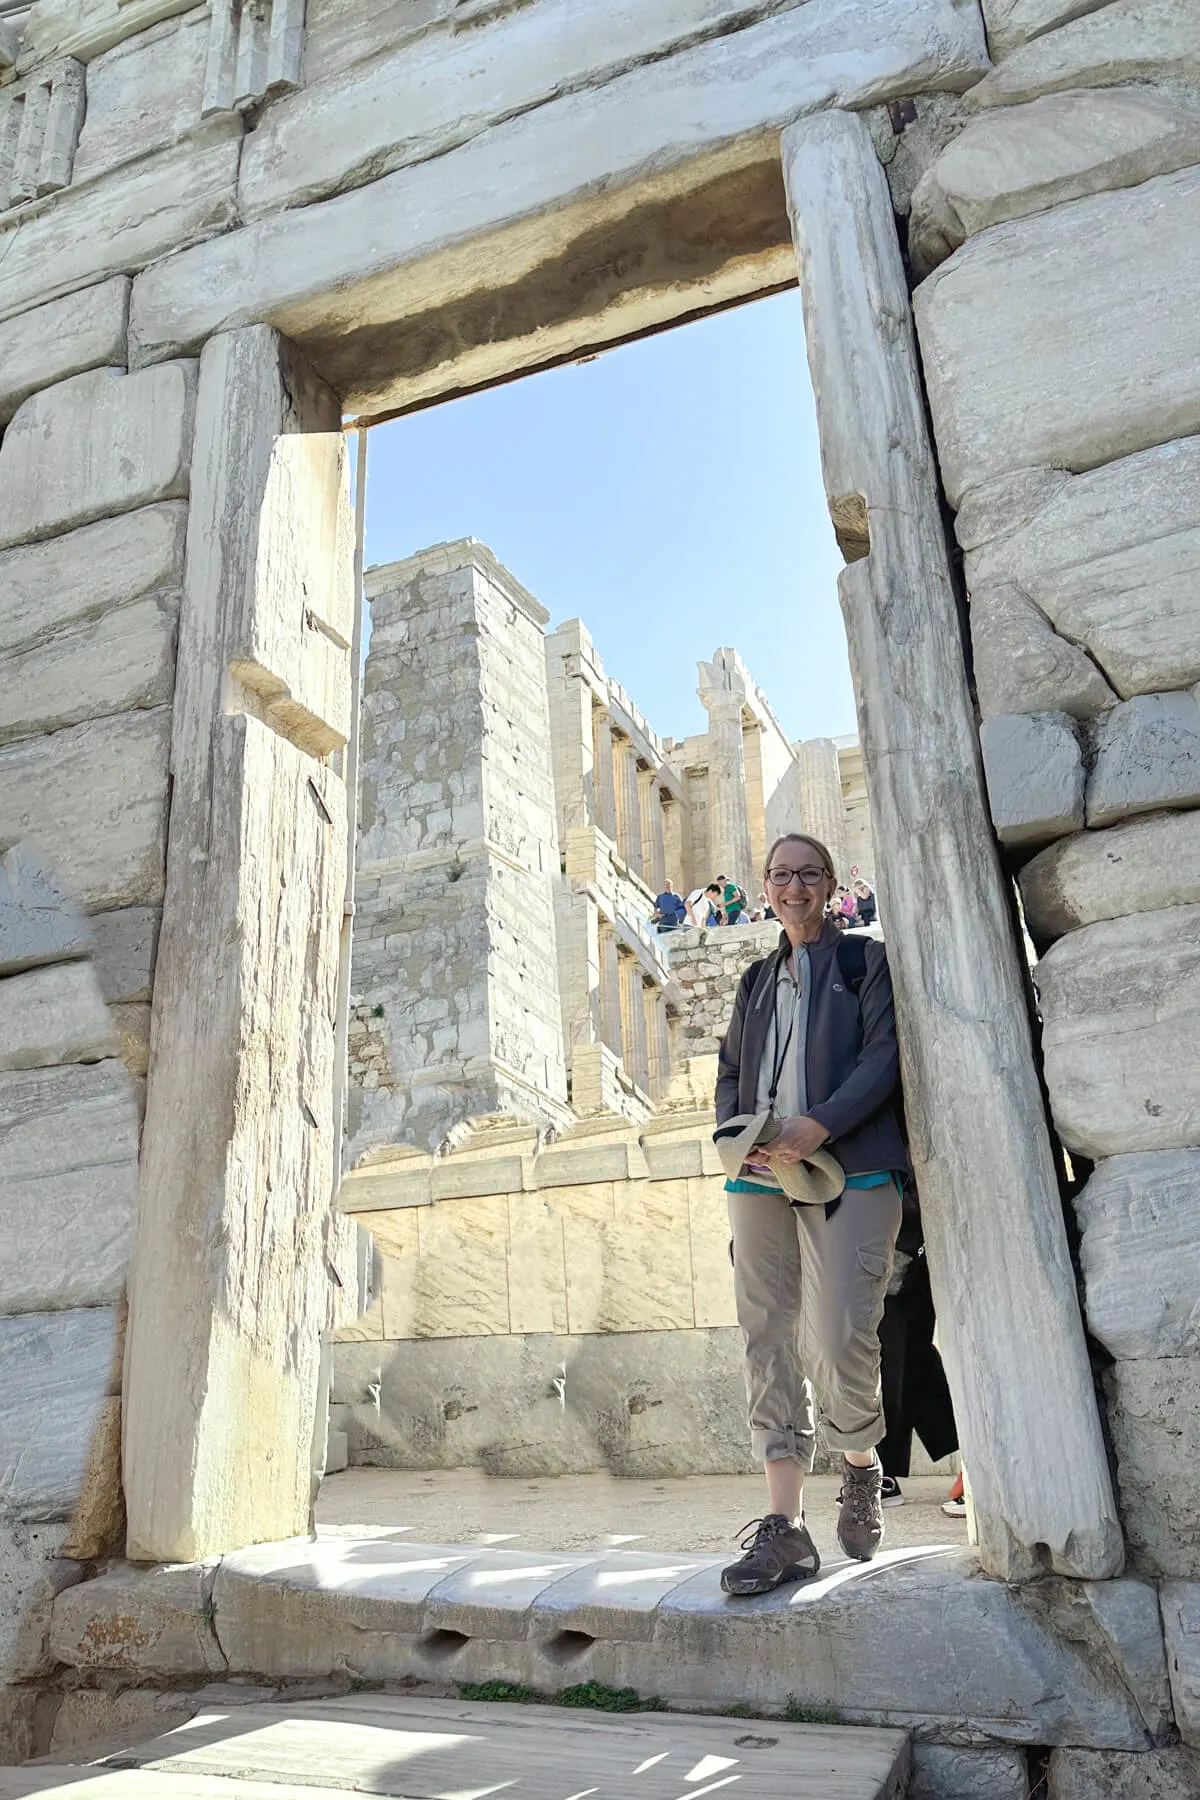 Lauren in the doorway on the Acropolis